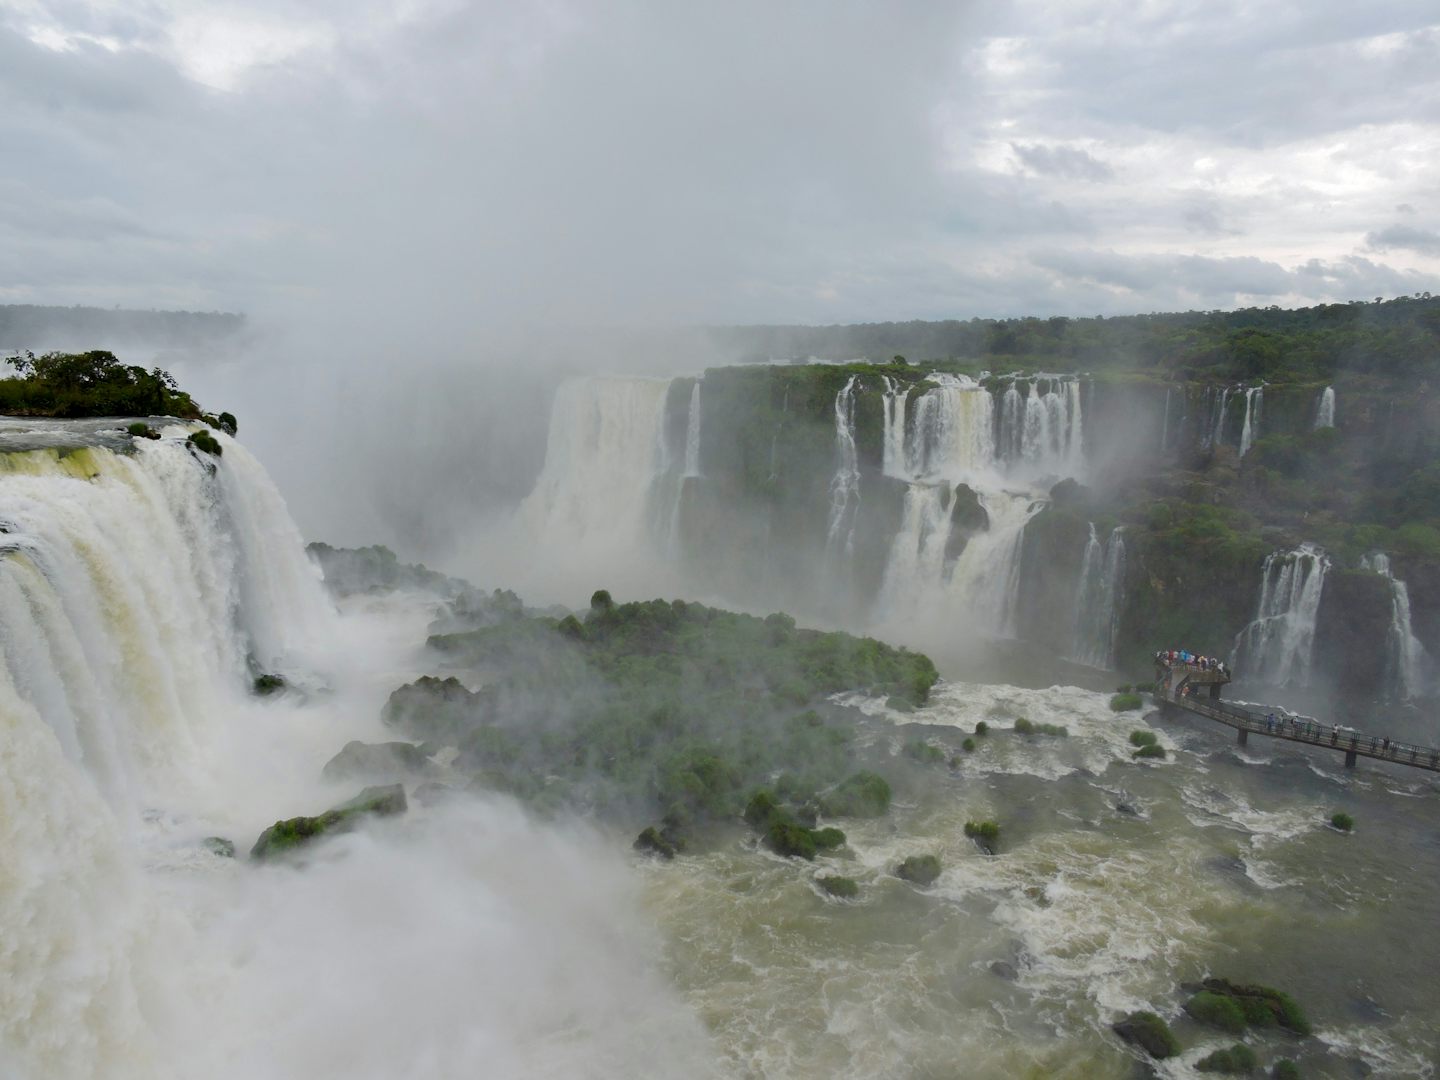 A pre-cruise visit to Iguazzu Falls